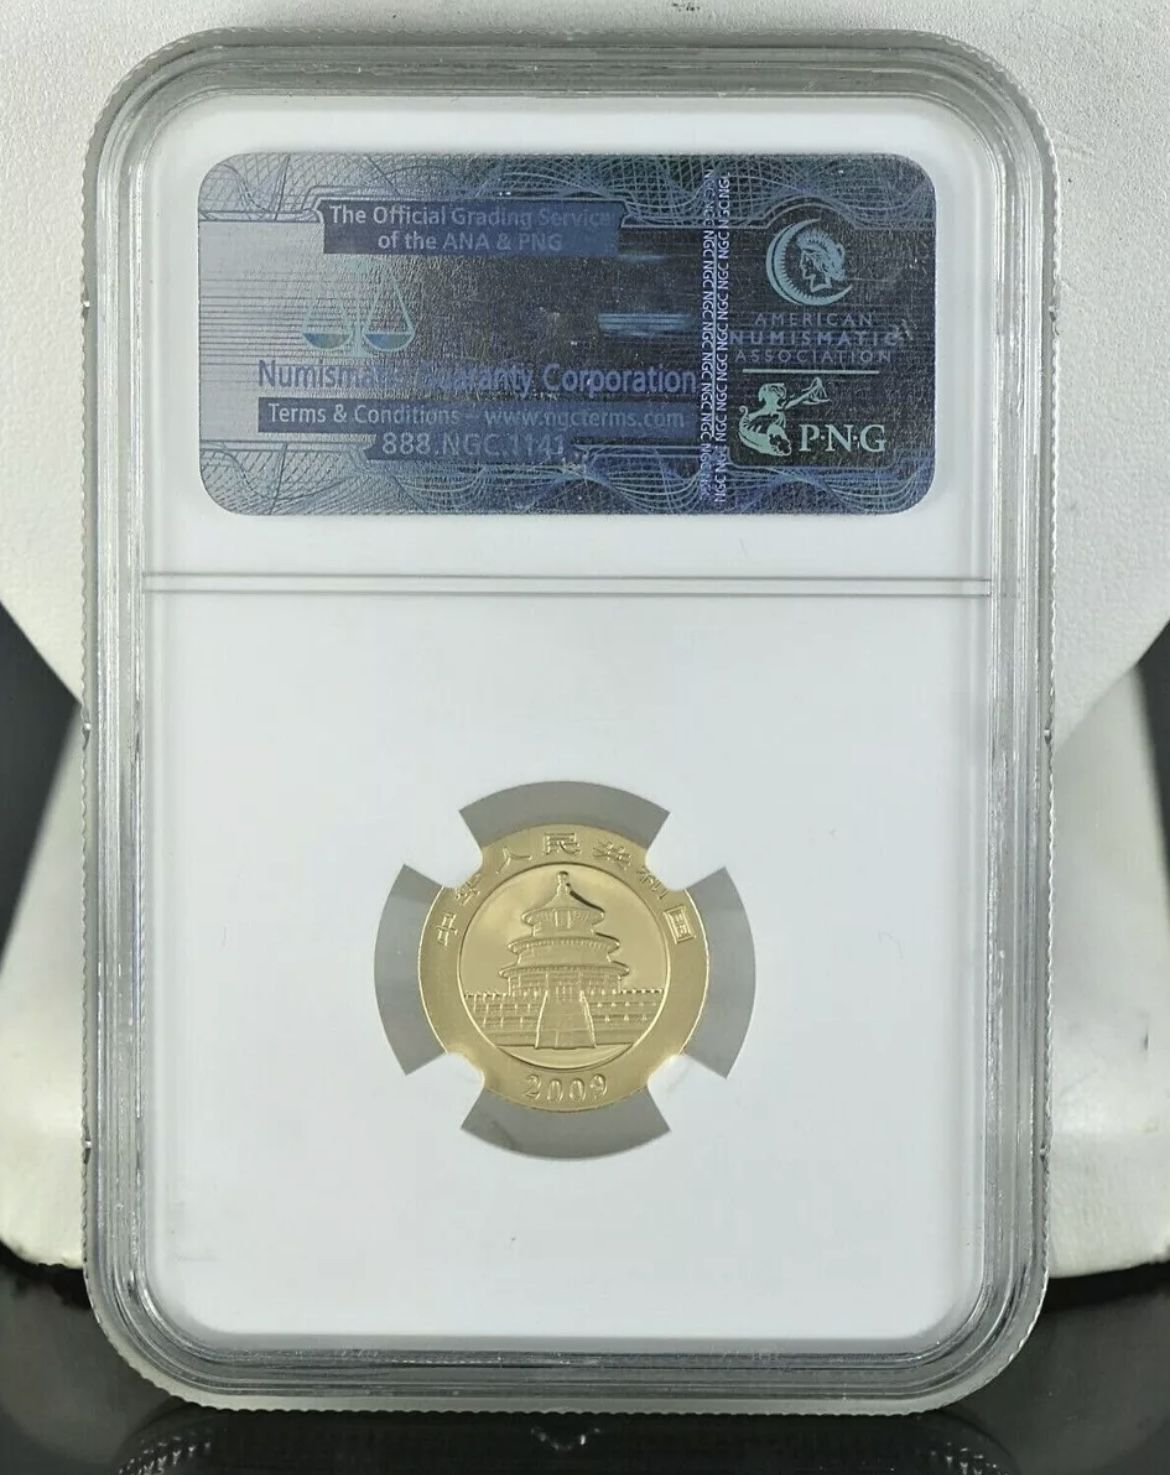 ¥50 NGC China G50Y Yuan Panda 2009 MS69 Coin 24K .999 1/10oz 五十元 熊猫 金币   